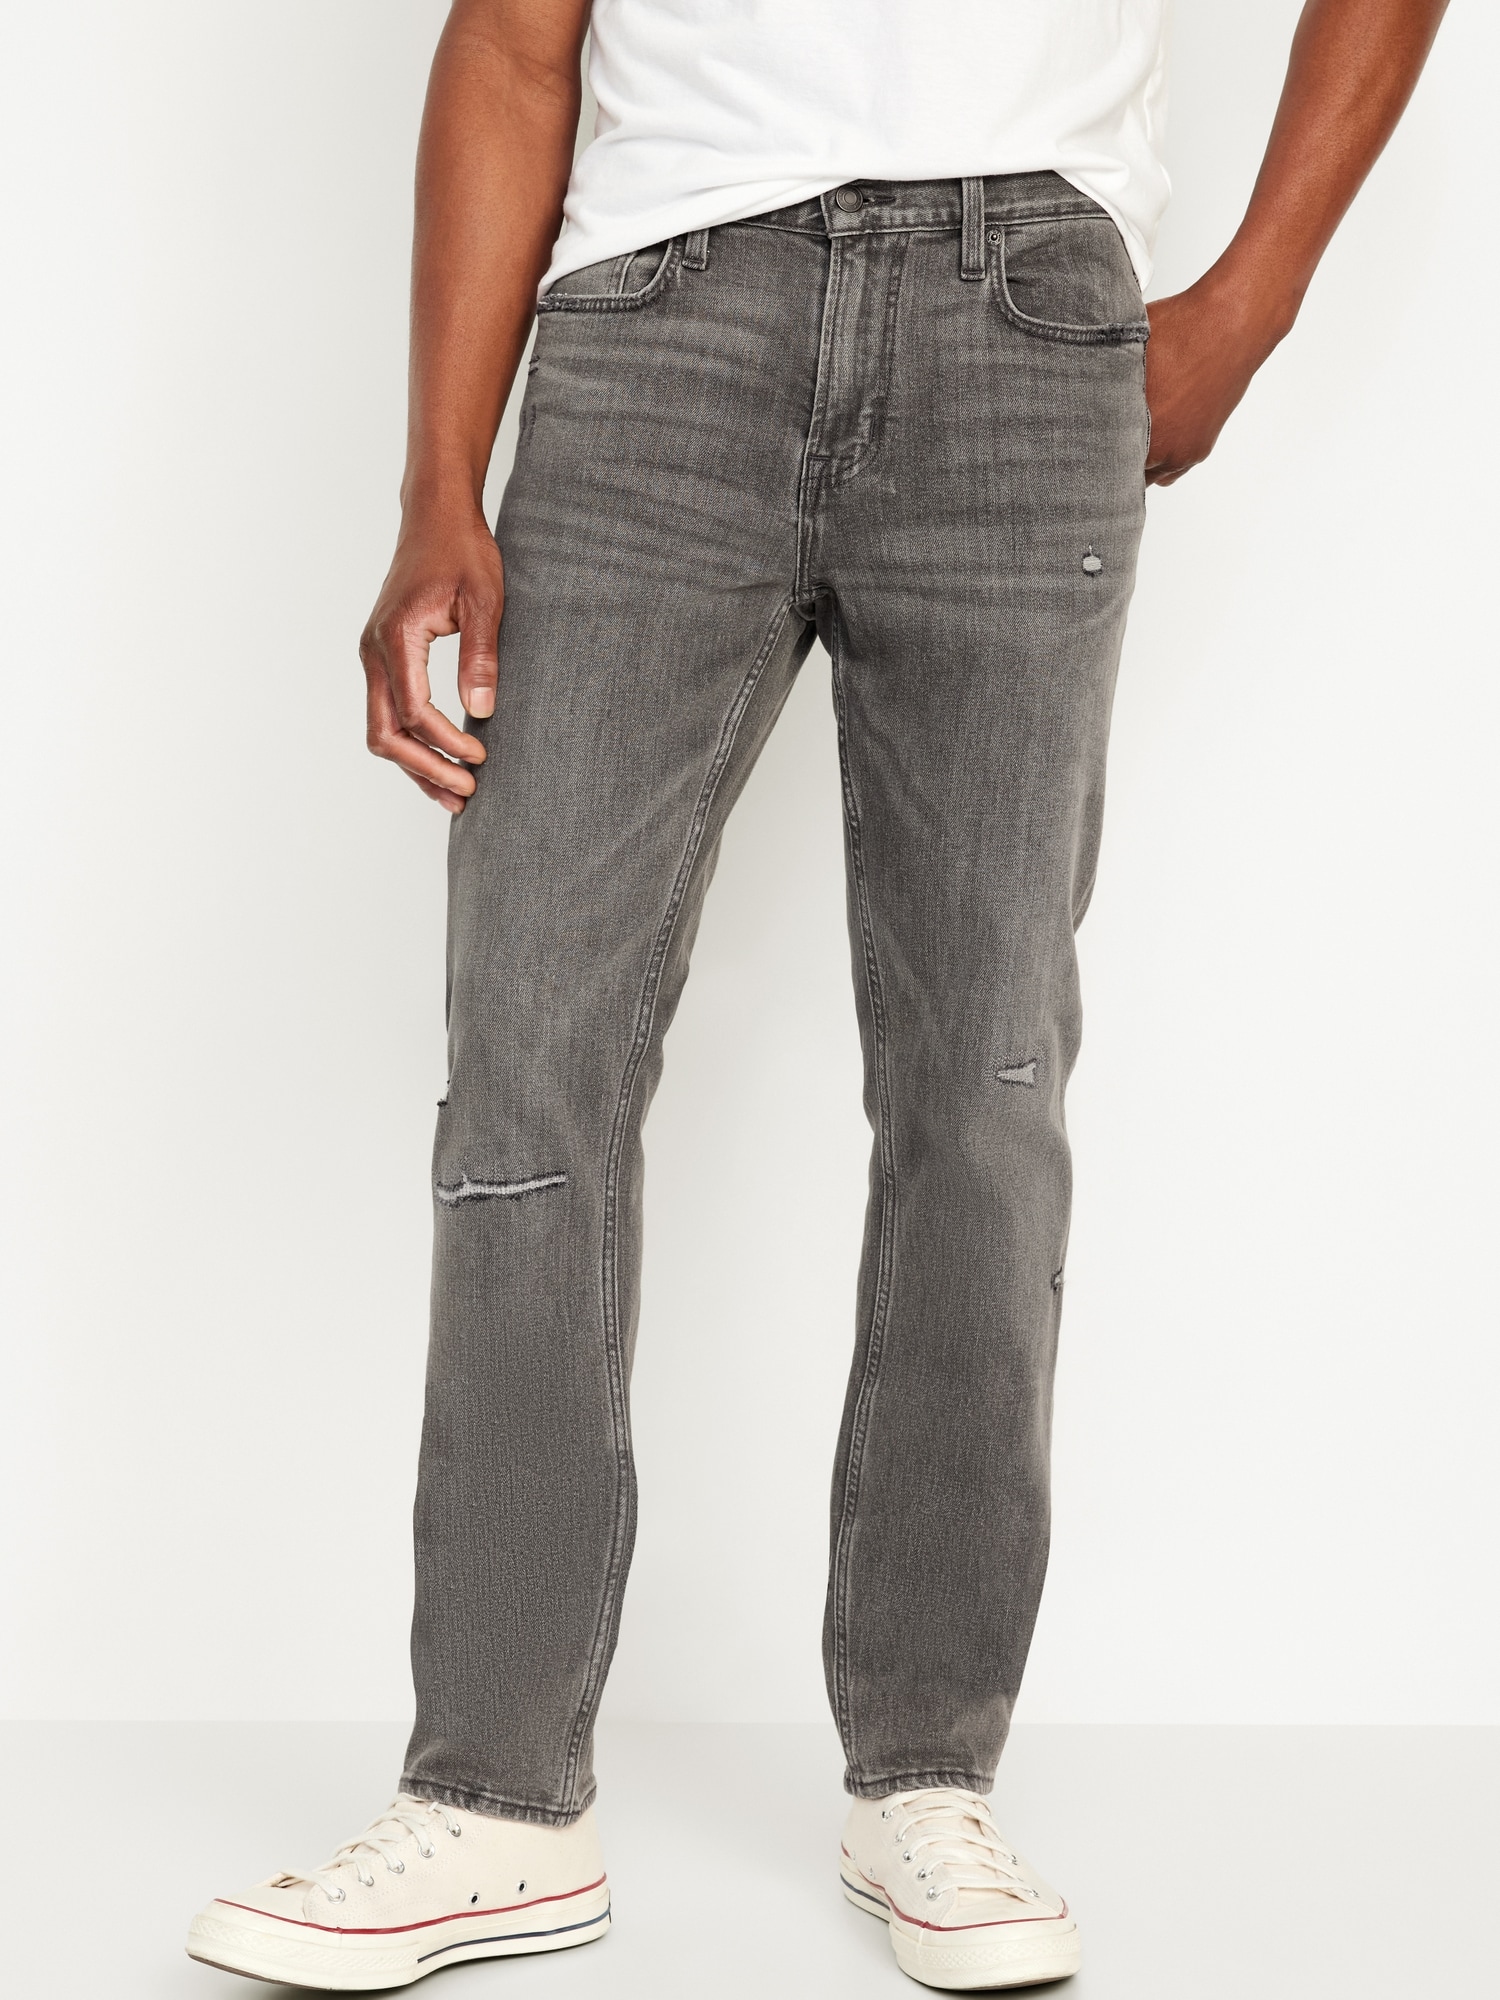 Slim Built-In Flex Ripped Gray Jeans for Men